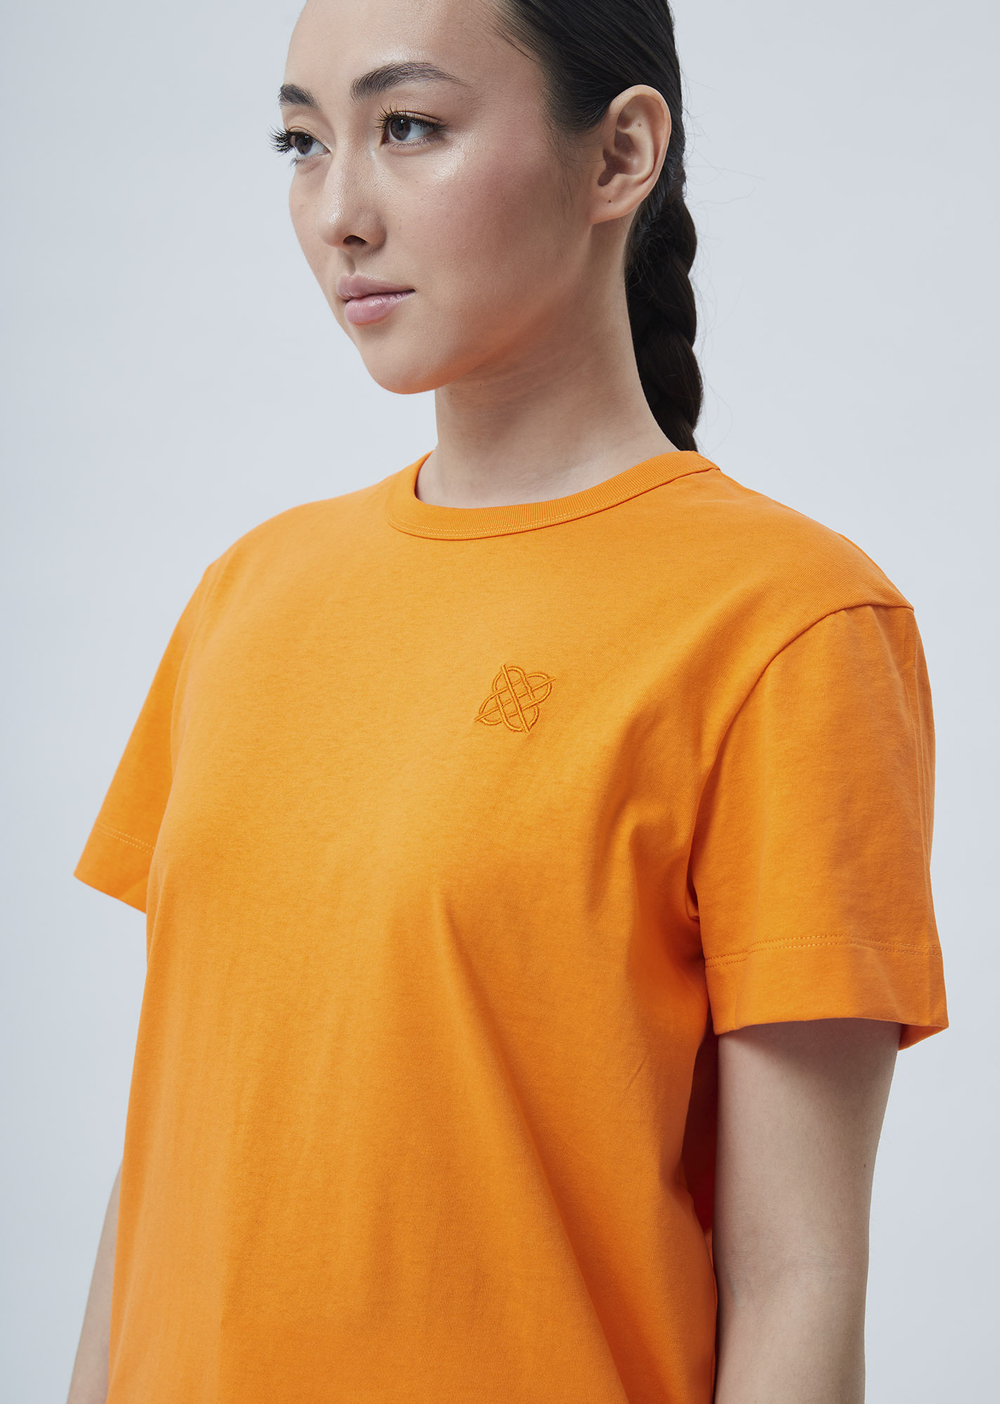 Женская футболка с вышивкой оранжевый р.M